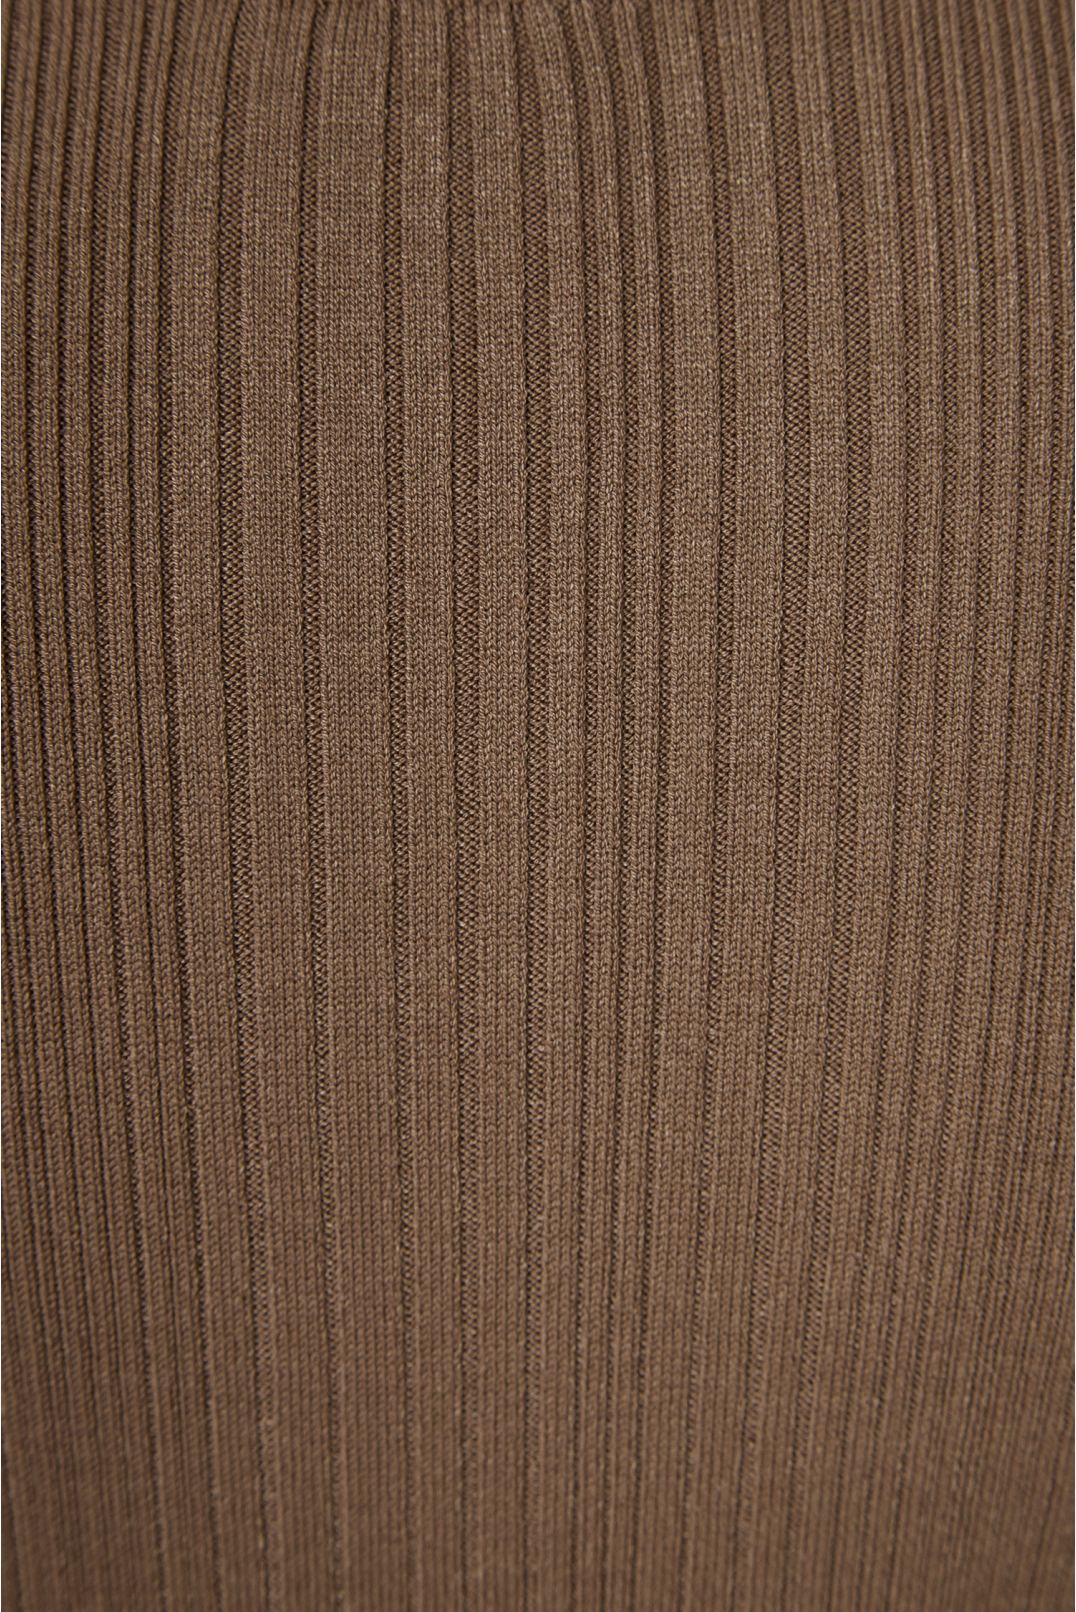 Женский коричневый кардиган - 4